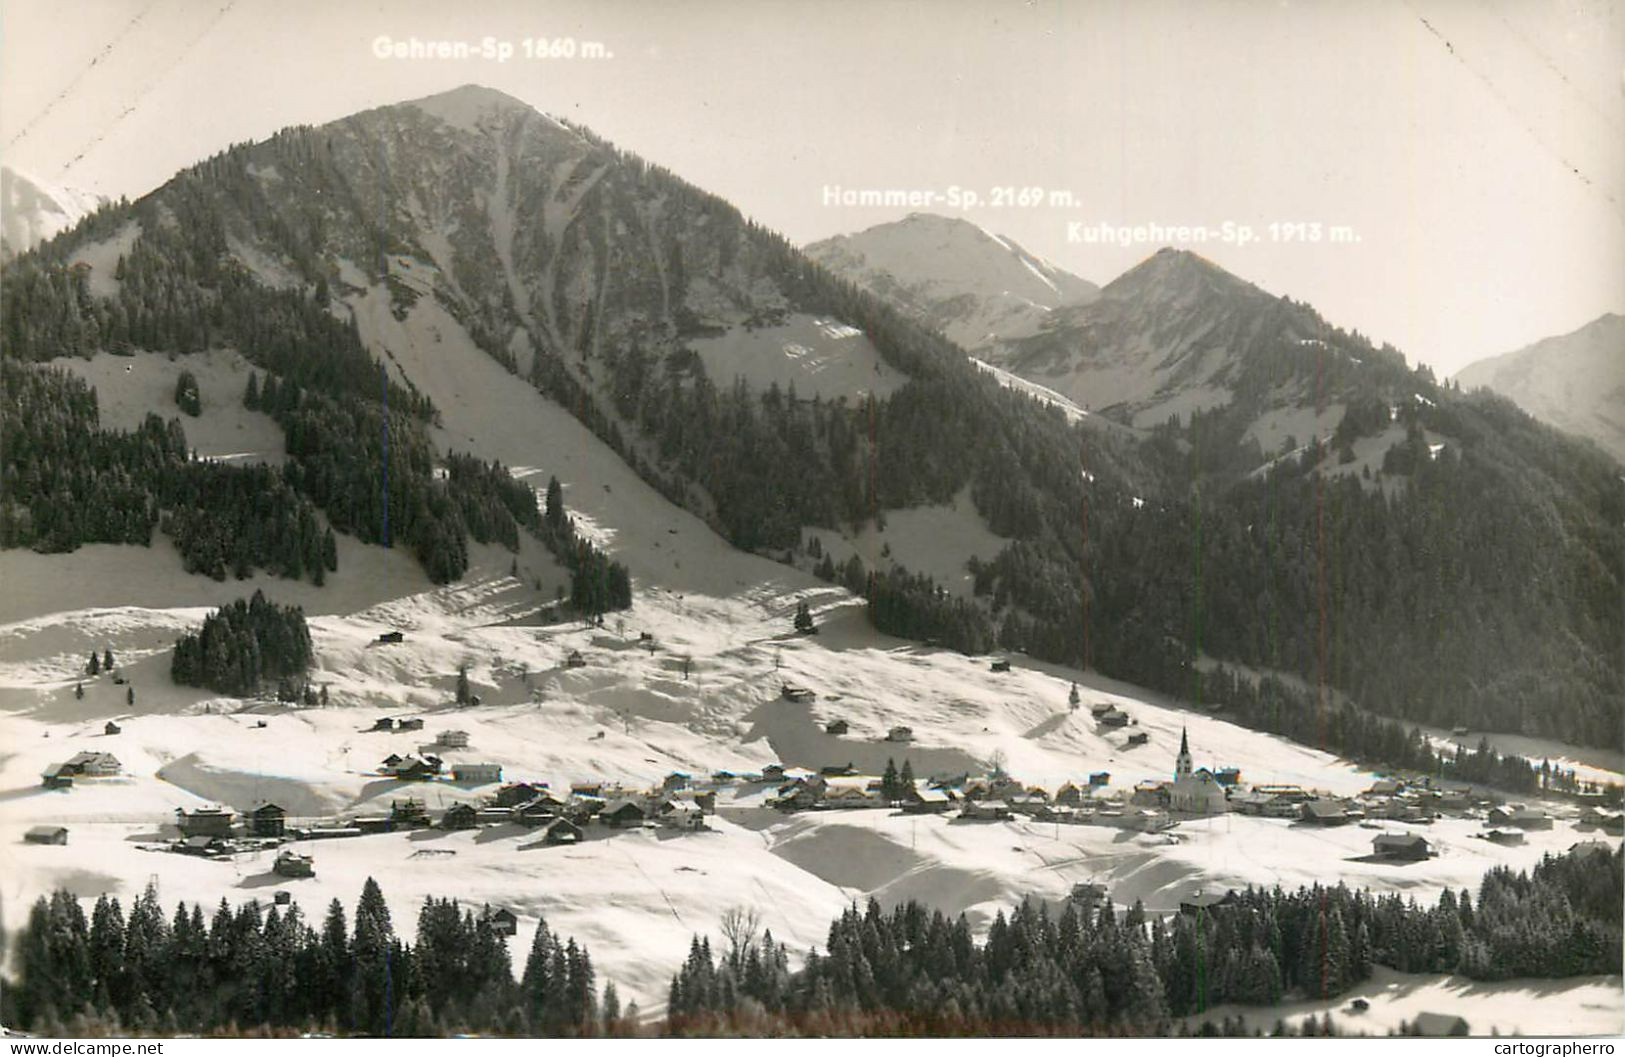 Austria Kleinwalsertal General View Winter Scenery - Kleinwalsertal